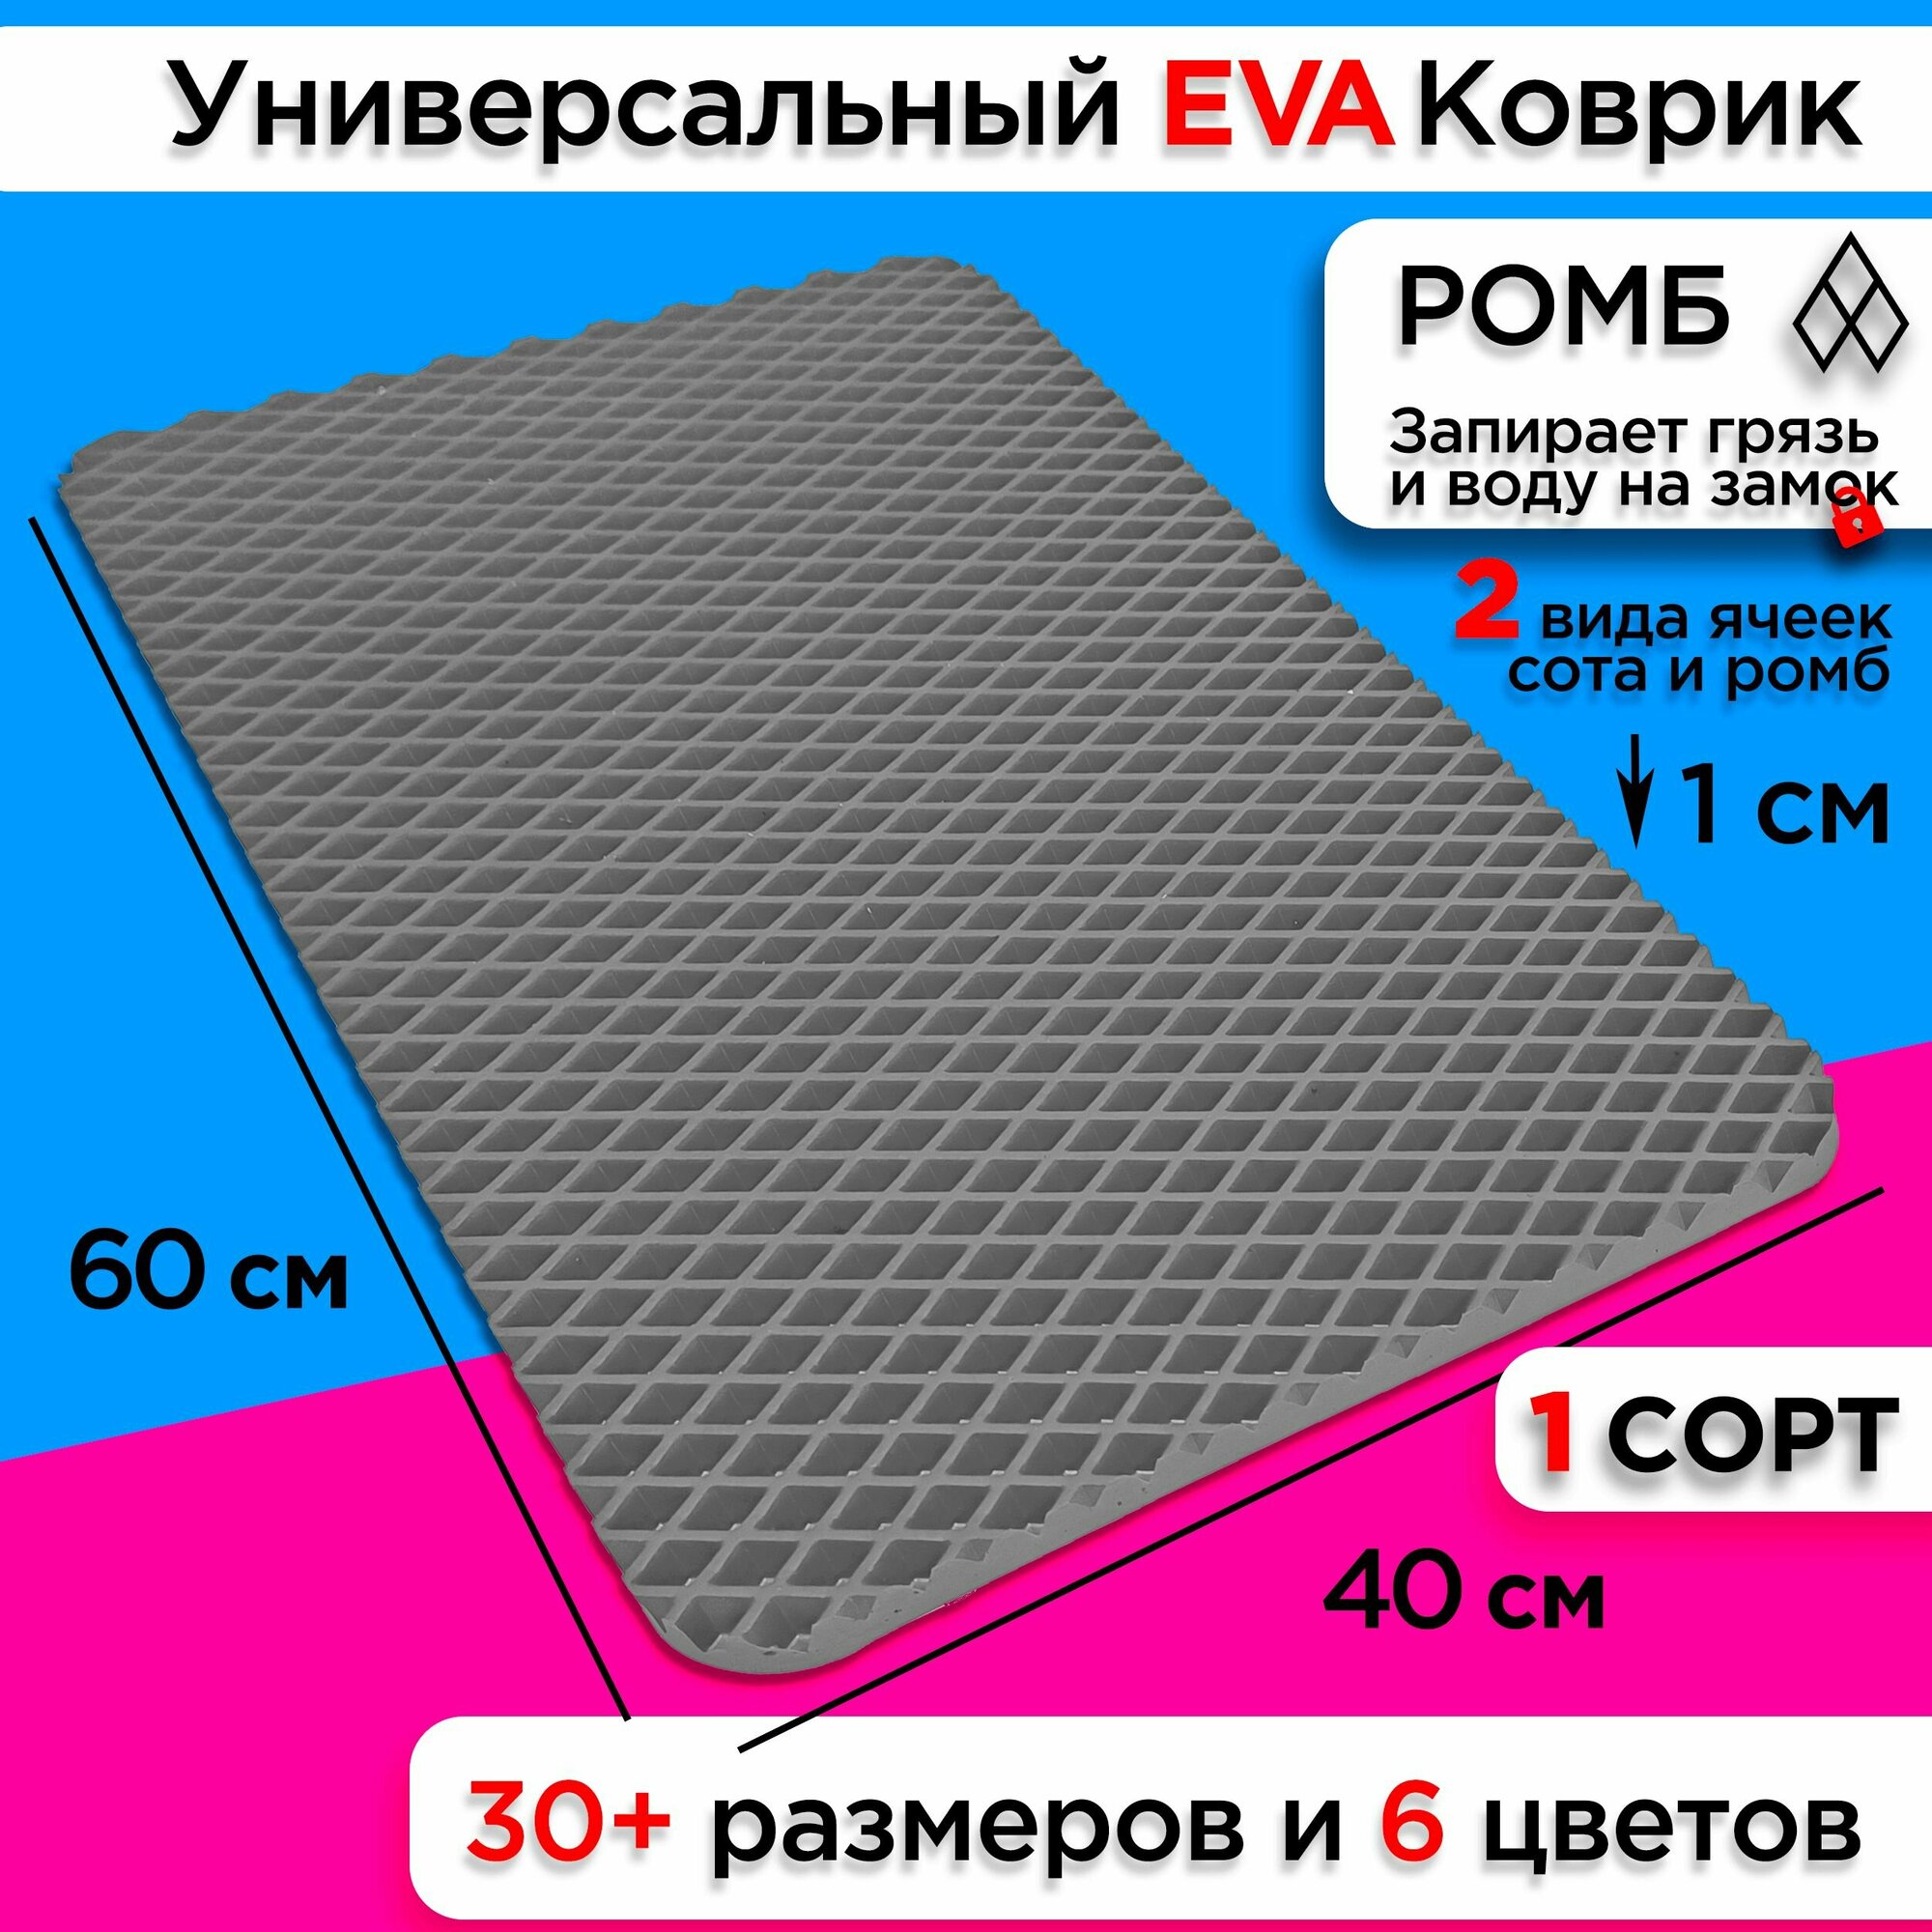 Коврик придверный EVA 60 х 40 см грязезащитный входной в прихожую износостойкий ковер на пол под обувь на кухню в шкаф